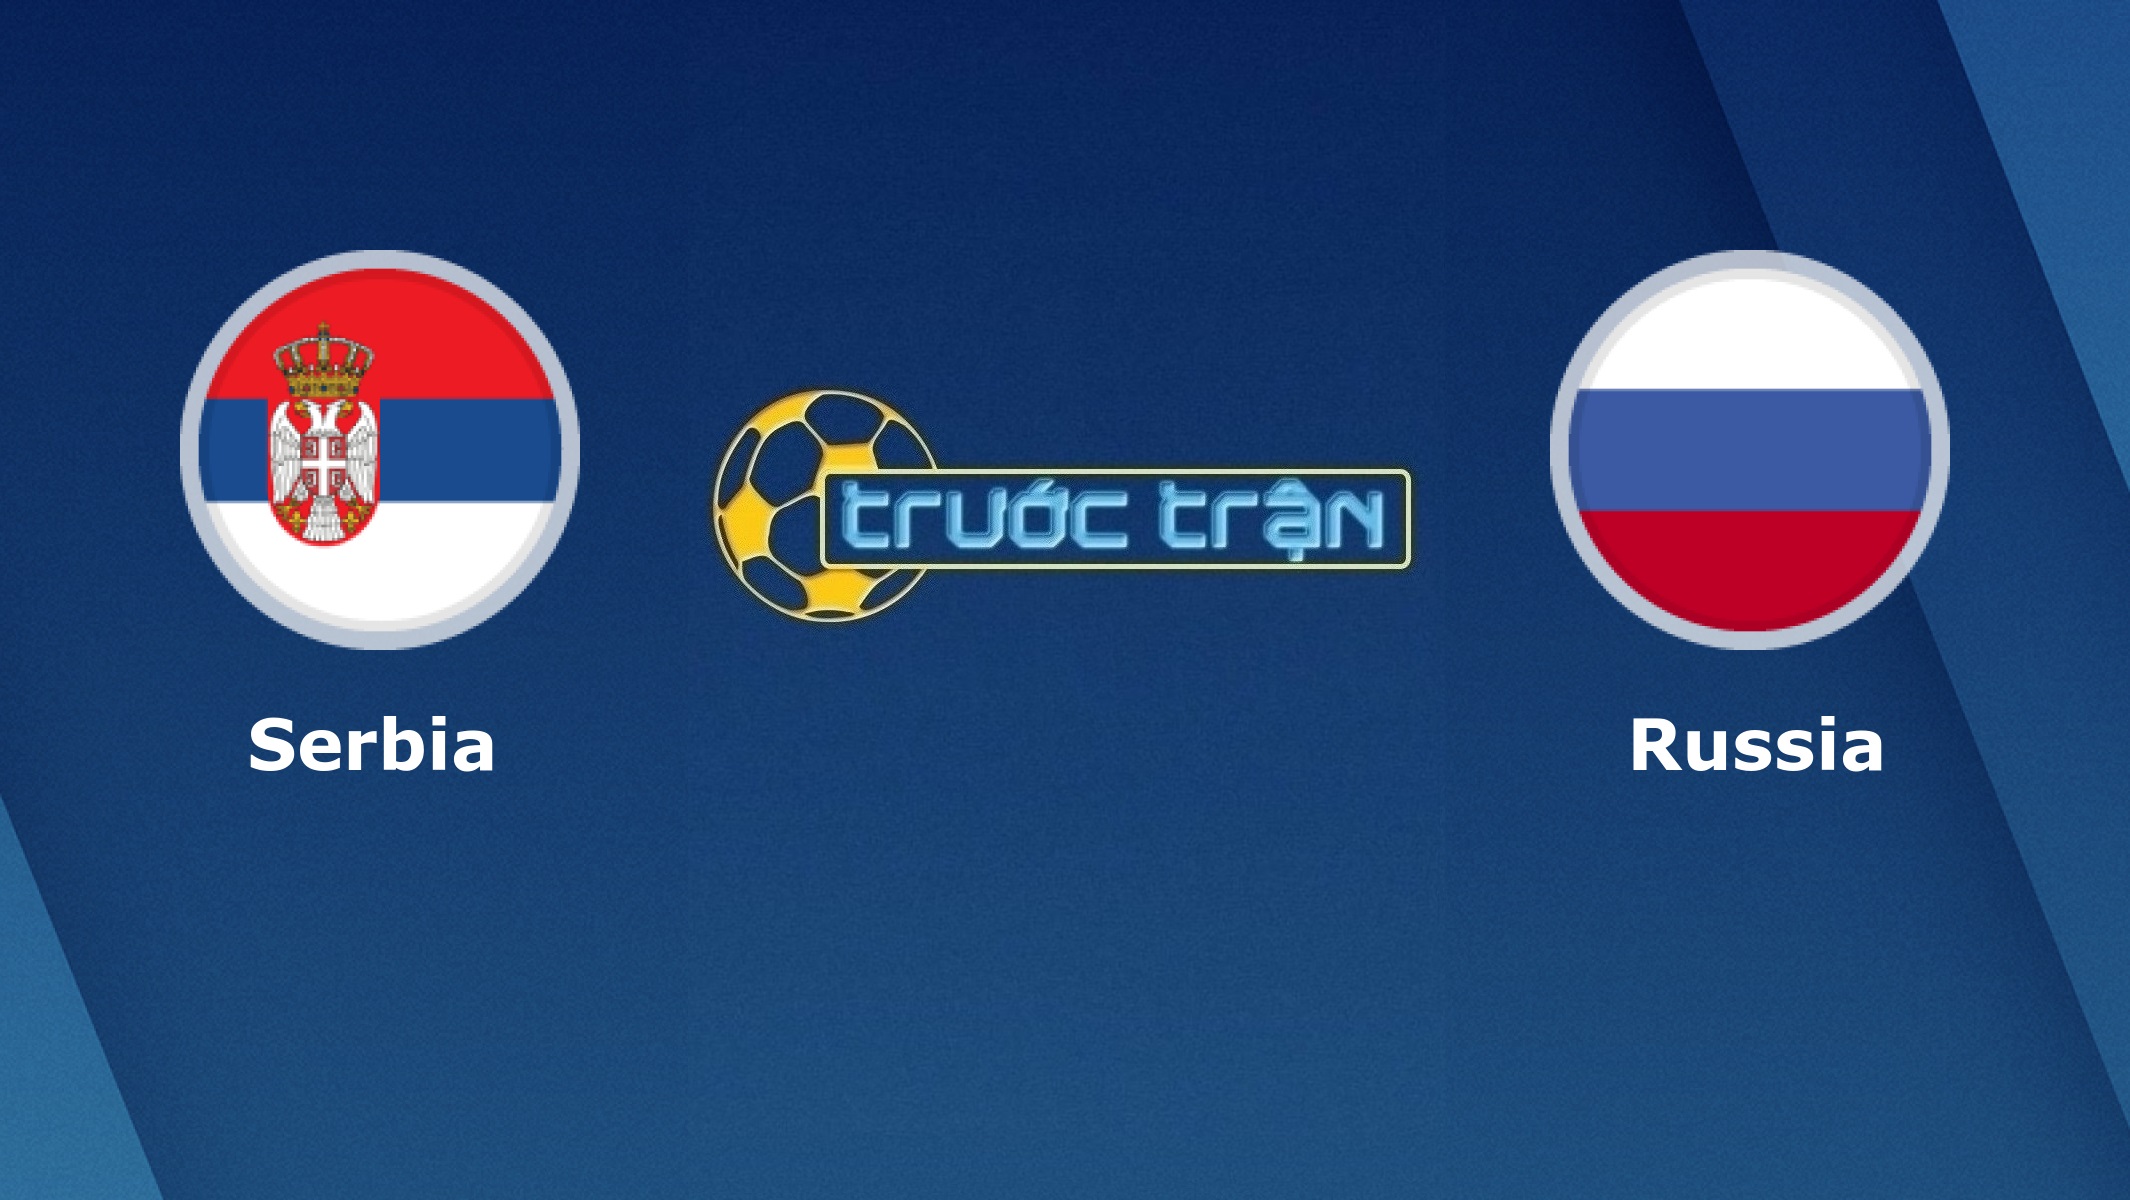 Serbia vs Nga – Tip kèo bóng đá hôm nay – 02h45 19/11/2020